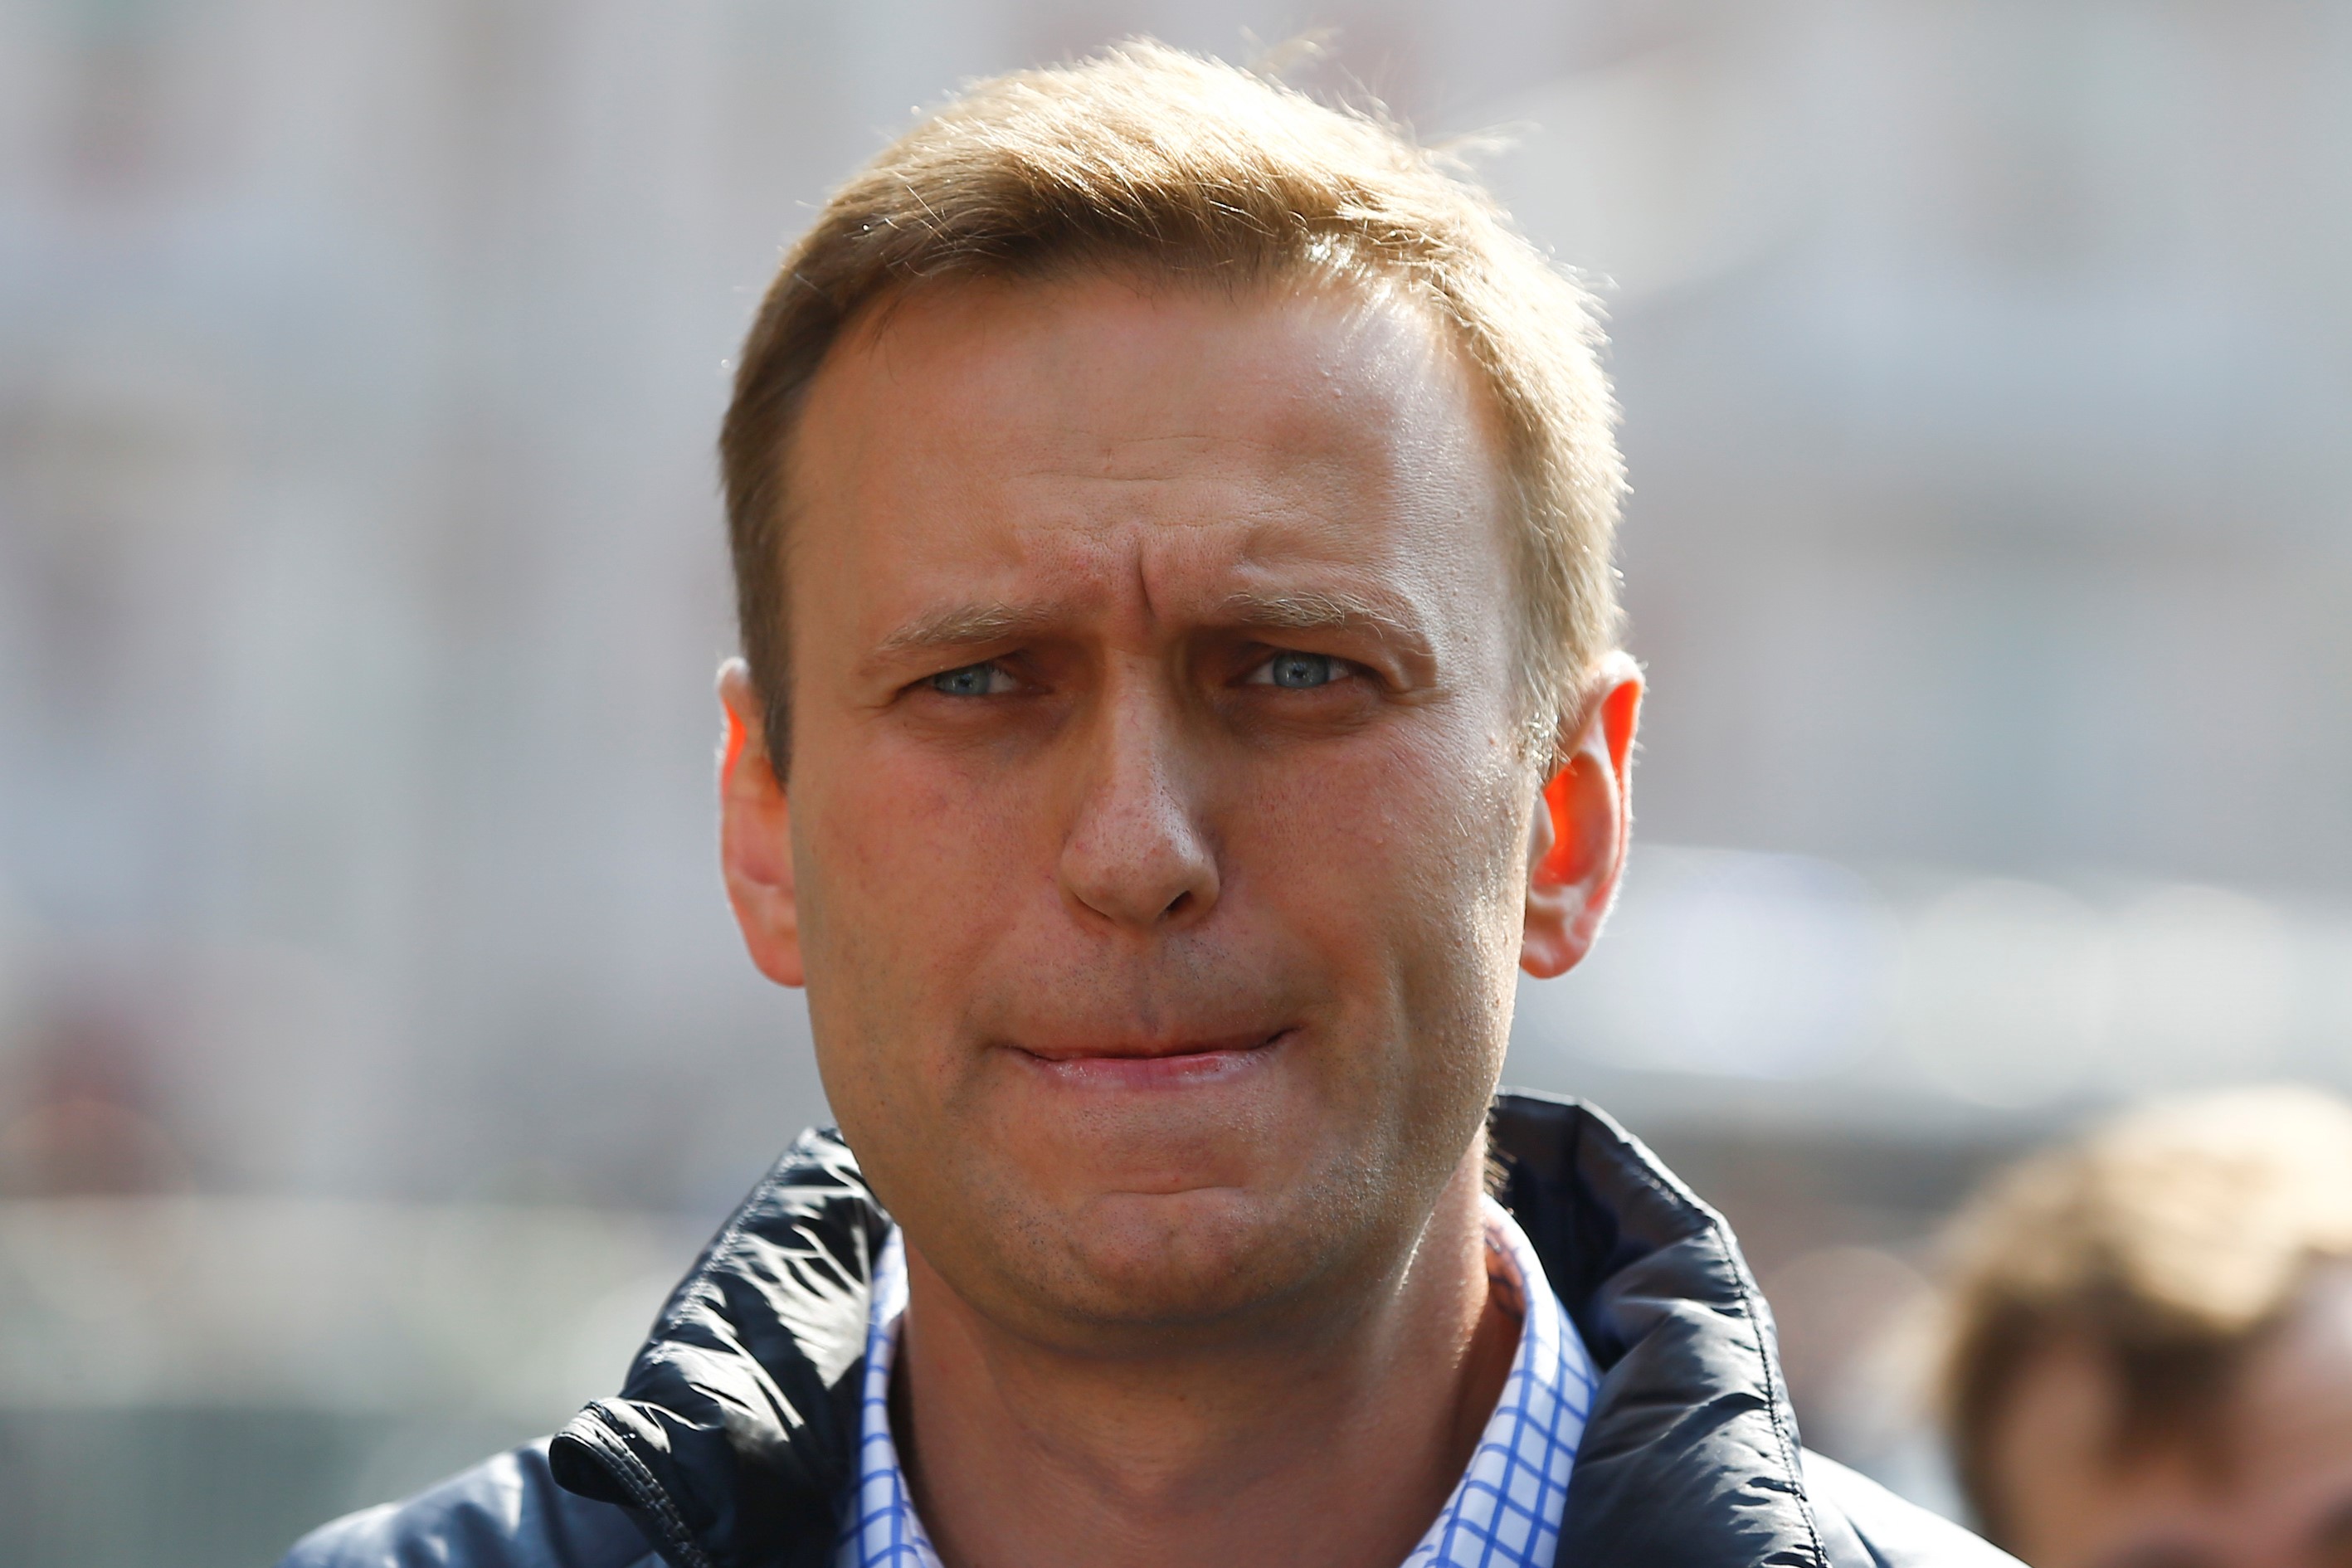 Биткоины и аномальные доходы: Как прошло судебное заседание по делу Навального 22 февраля